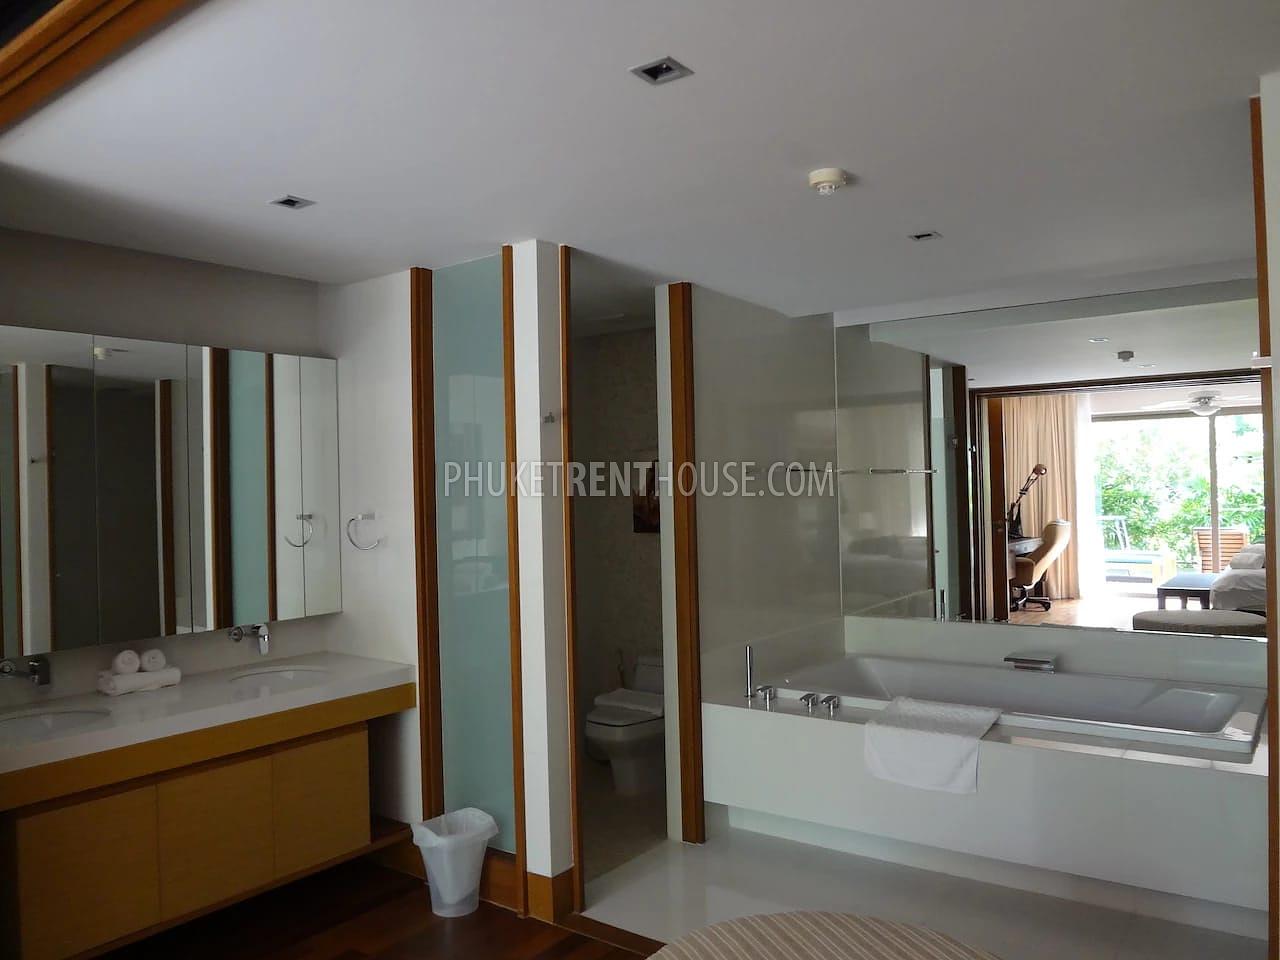 NAT20724: 3 Bedroom Apartment in Luxury Condominium in Nai Thon. Photo #10